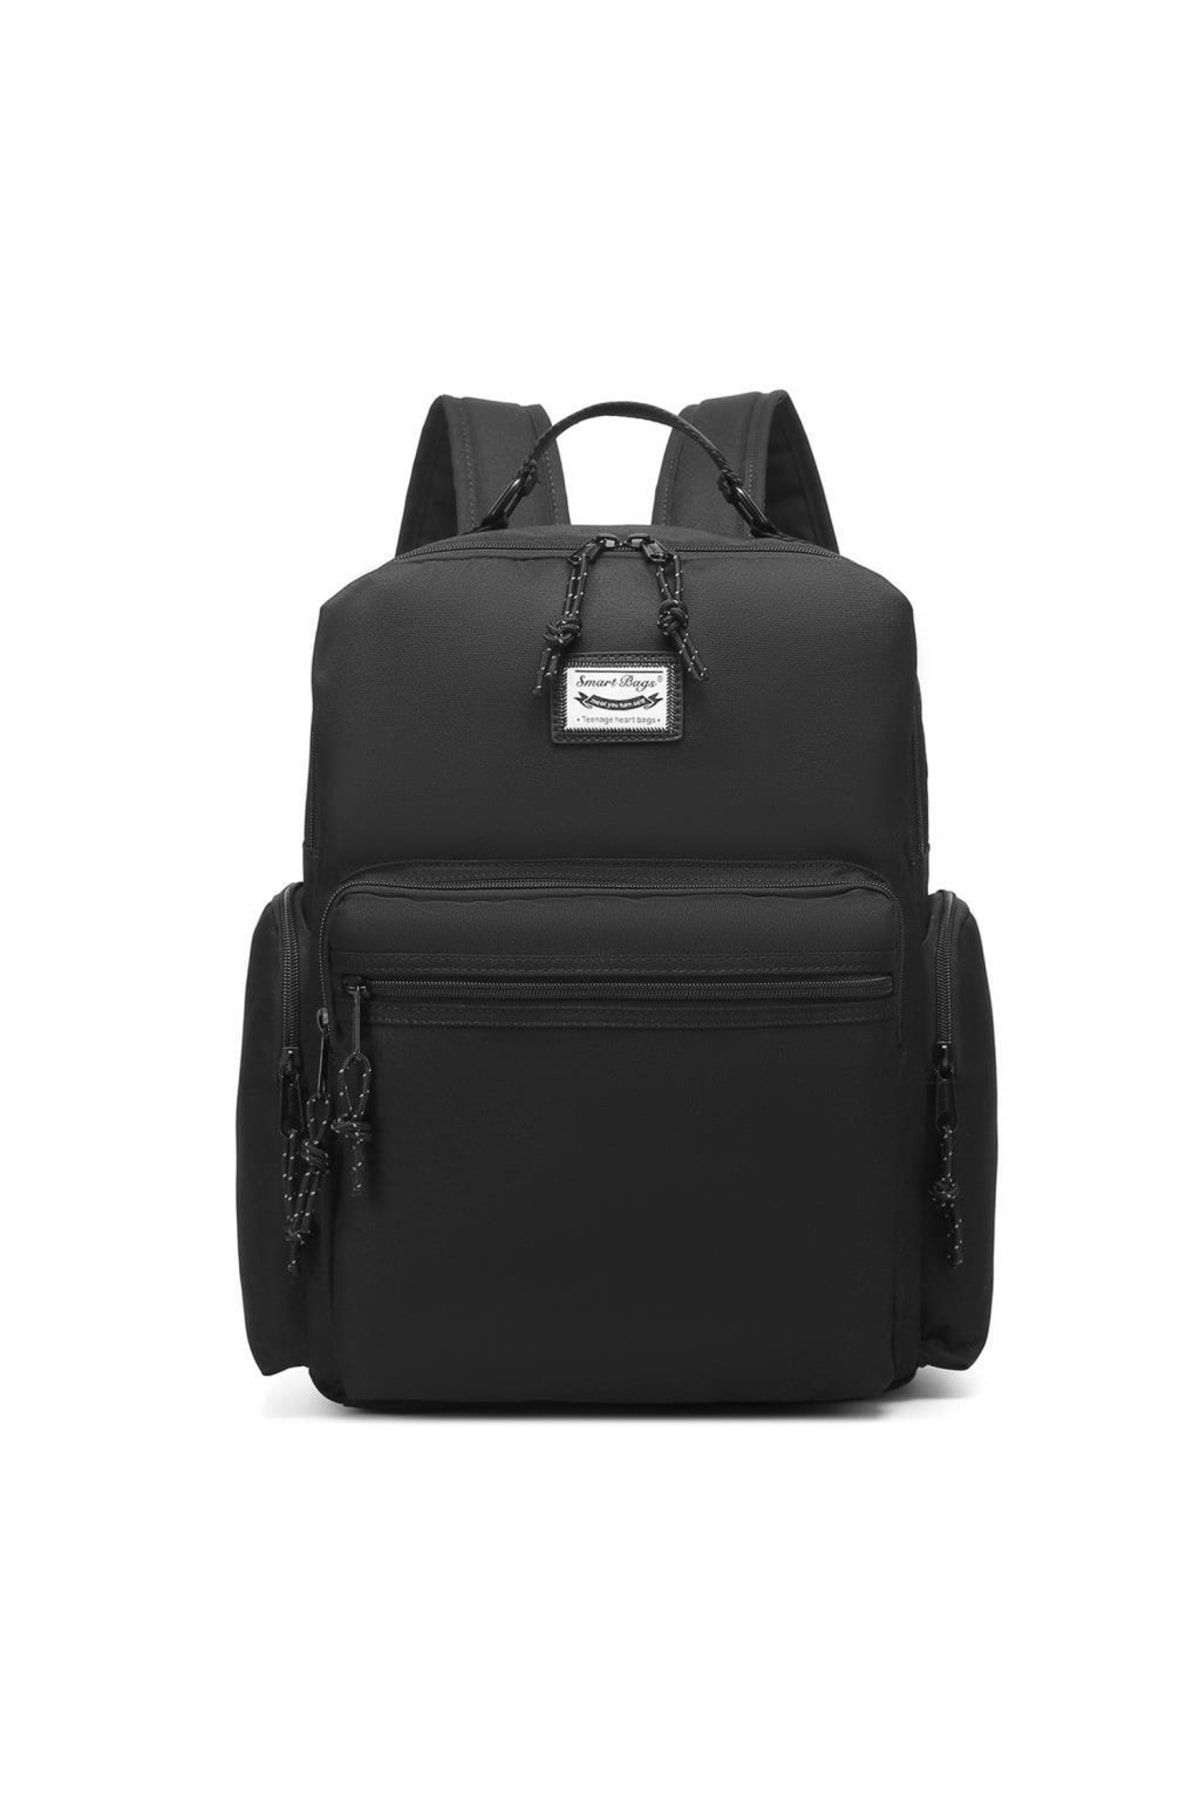 Smart Bags Algstore (Smart Bags) Sırt Çantası Okul Boyu Laptop Gözlü 3124